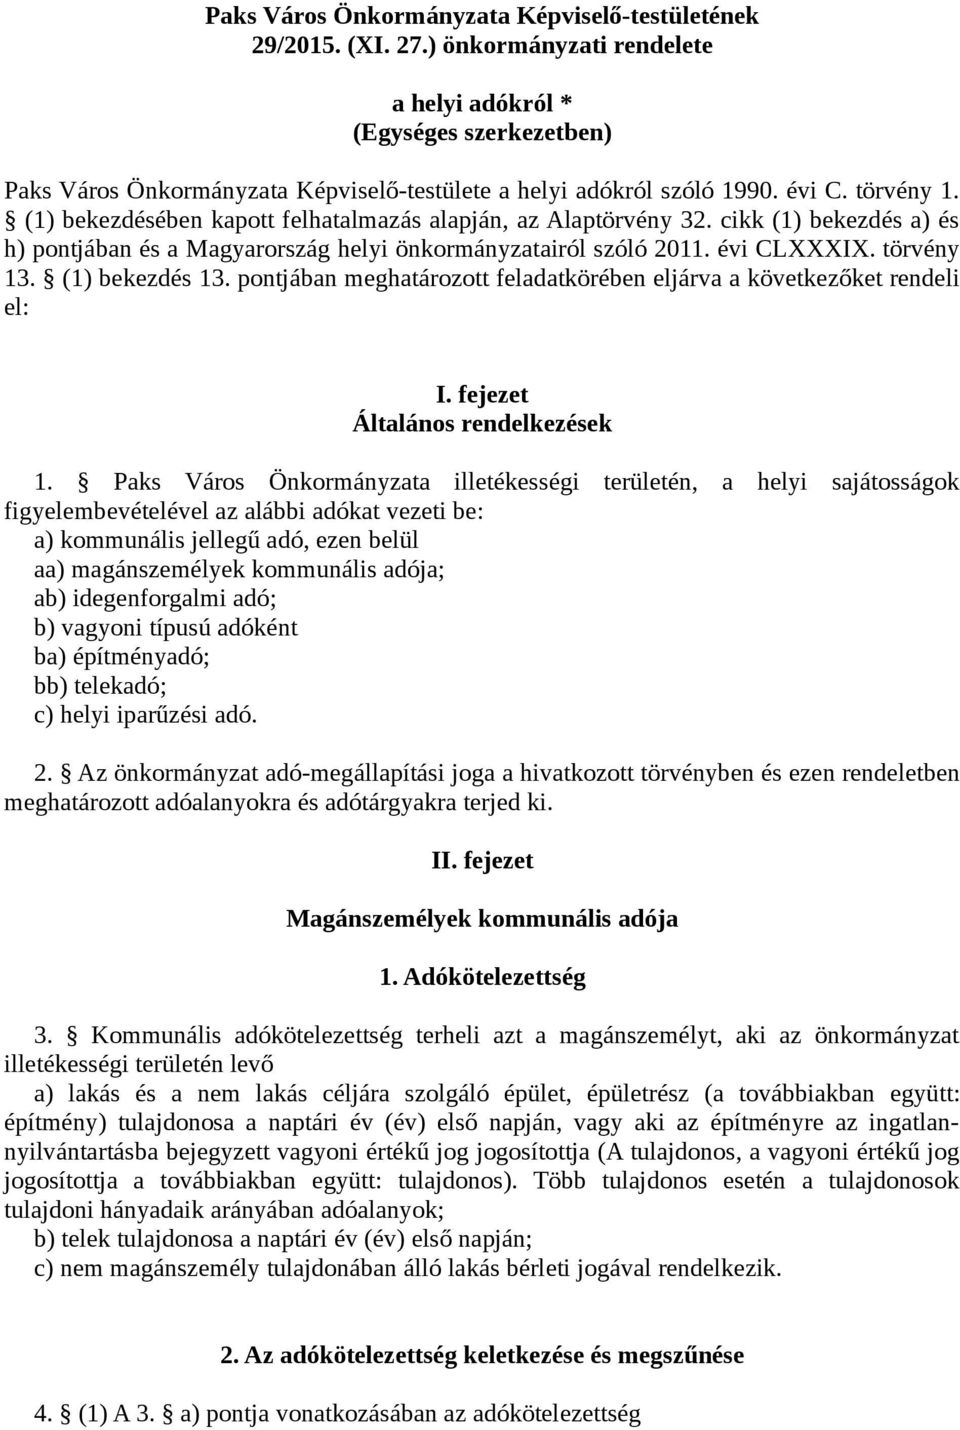 (1) bekezdésében kapott felhatalmazás alapján, az Alaptörvény 32. cikk (1) bekezdés a) és h) pontjában és a Magyarország helyi önkormányzatairól szóló 2011. évi CLXXXIX. törvény 13. (1) bekezdés 13.